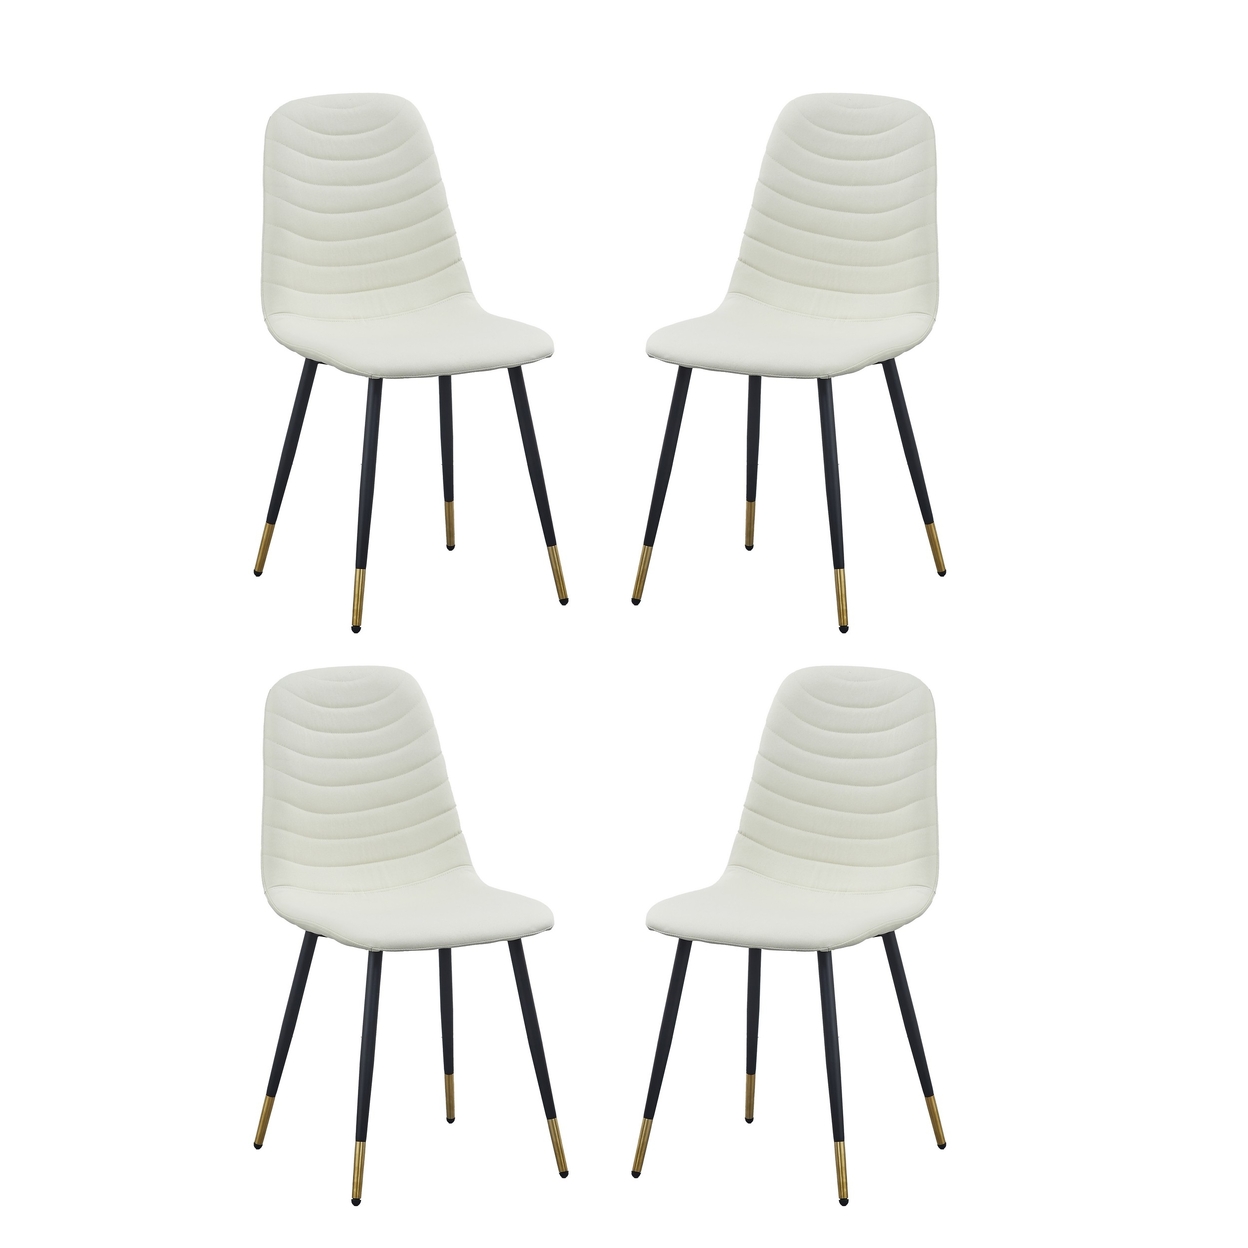 Gem 17 Inch Modern Metal Dining Chairs, Velvet Tufted, Set Of 4, White- Saltoro Sherpi